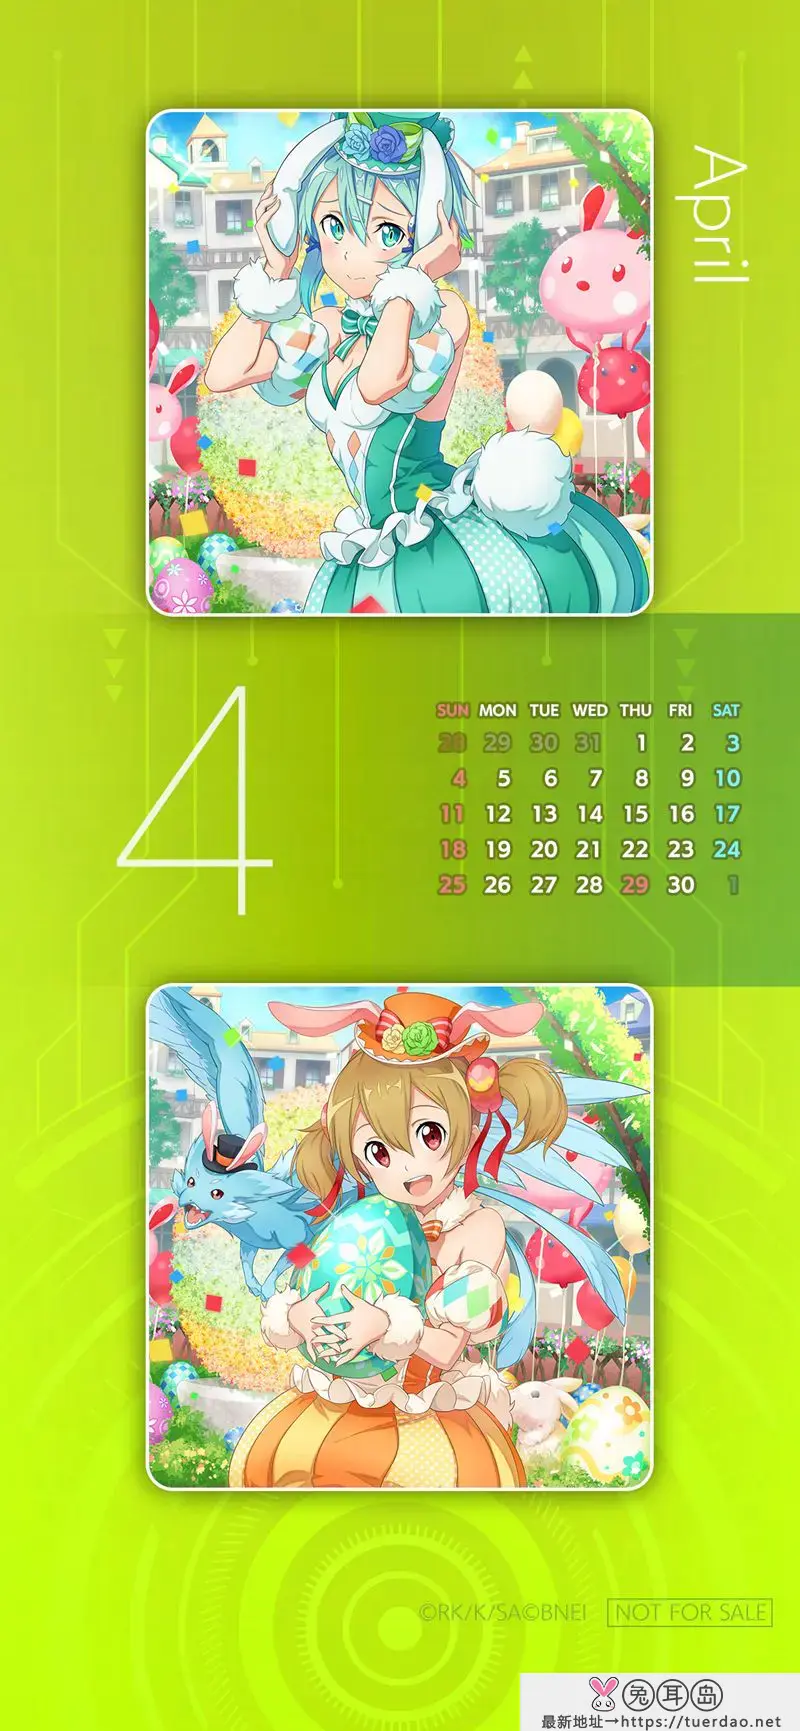 [画集]SAO 2021 Mobile Calendar Wallpapers[12P]